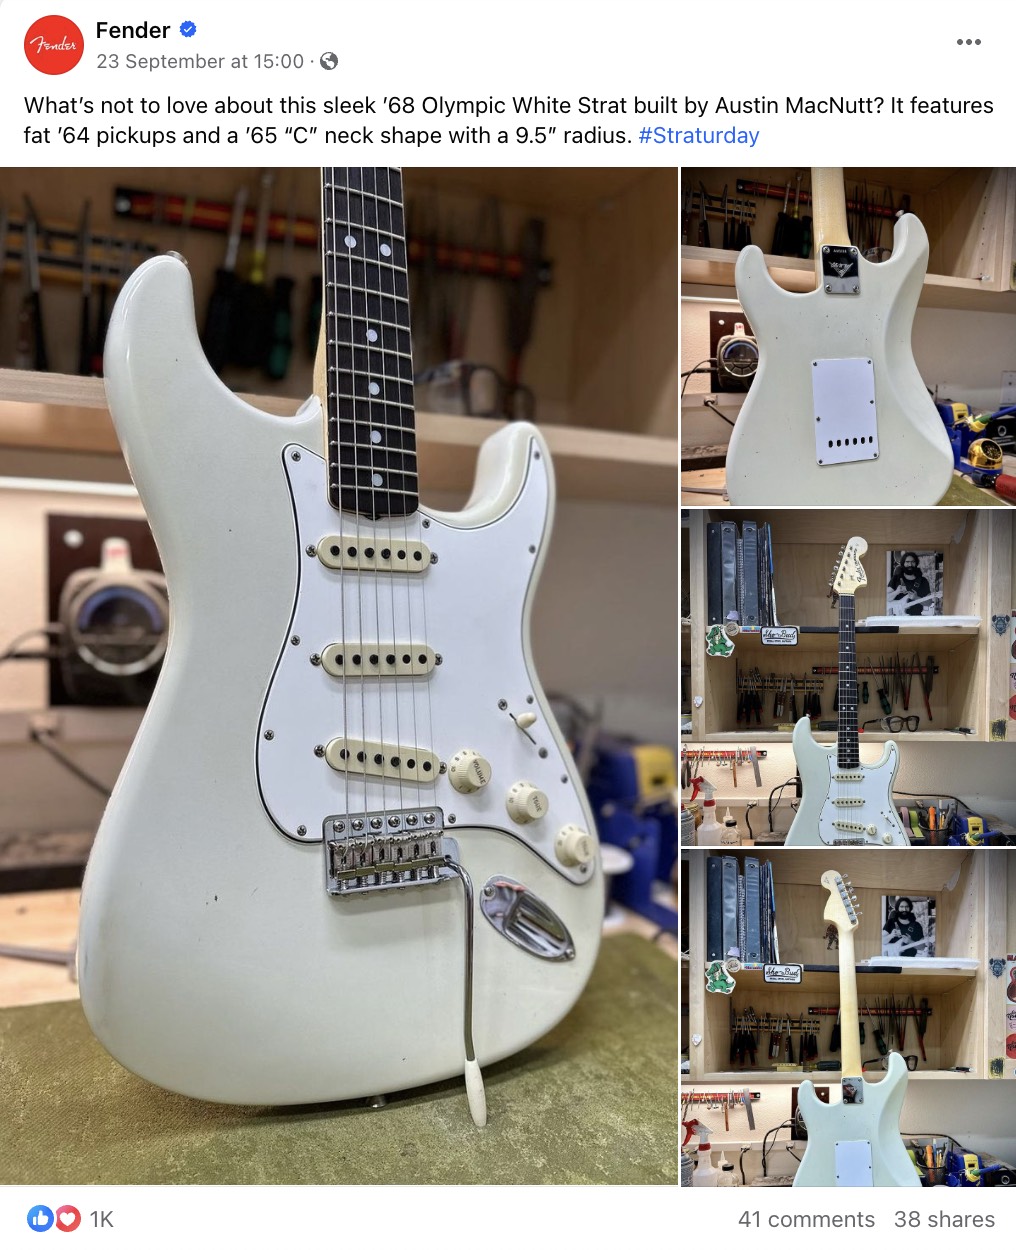 Fender's Facebook post on White Strat guitar